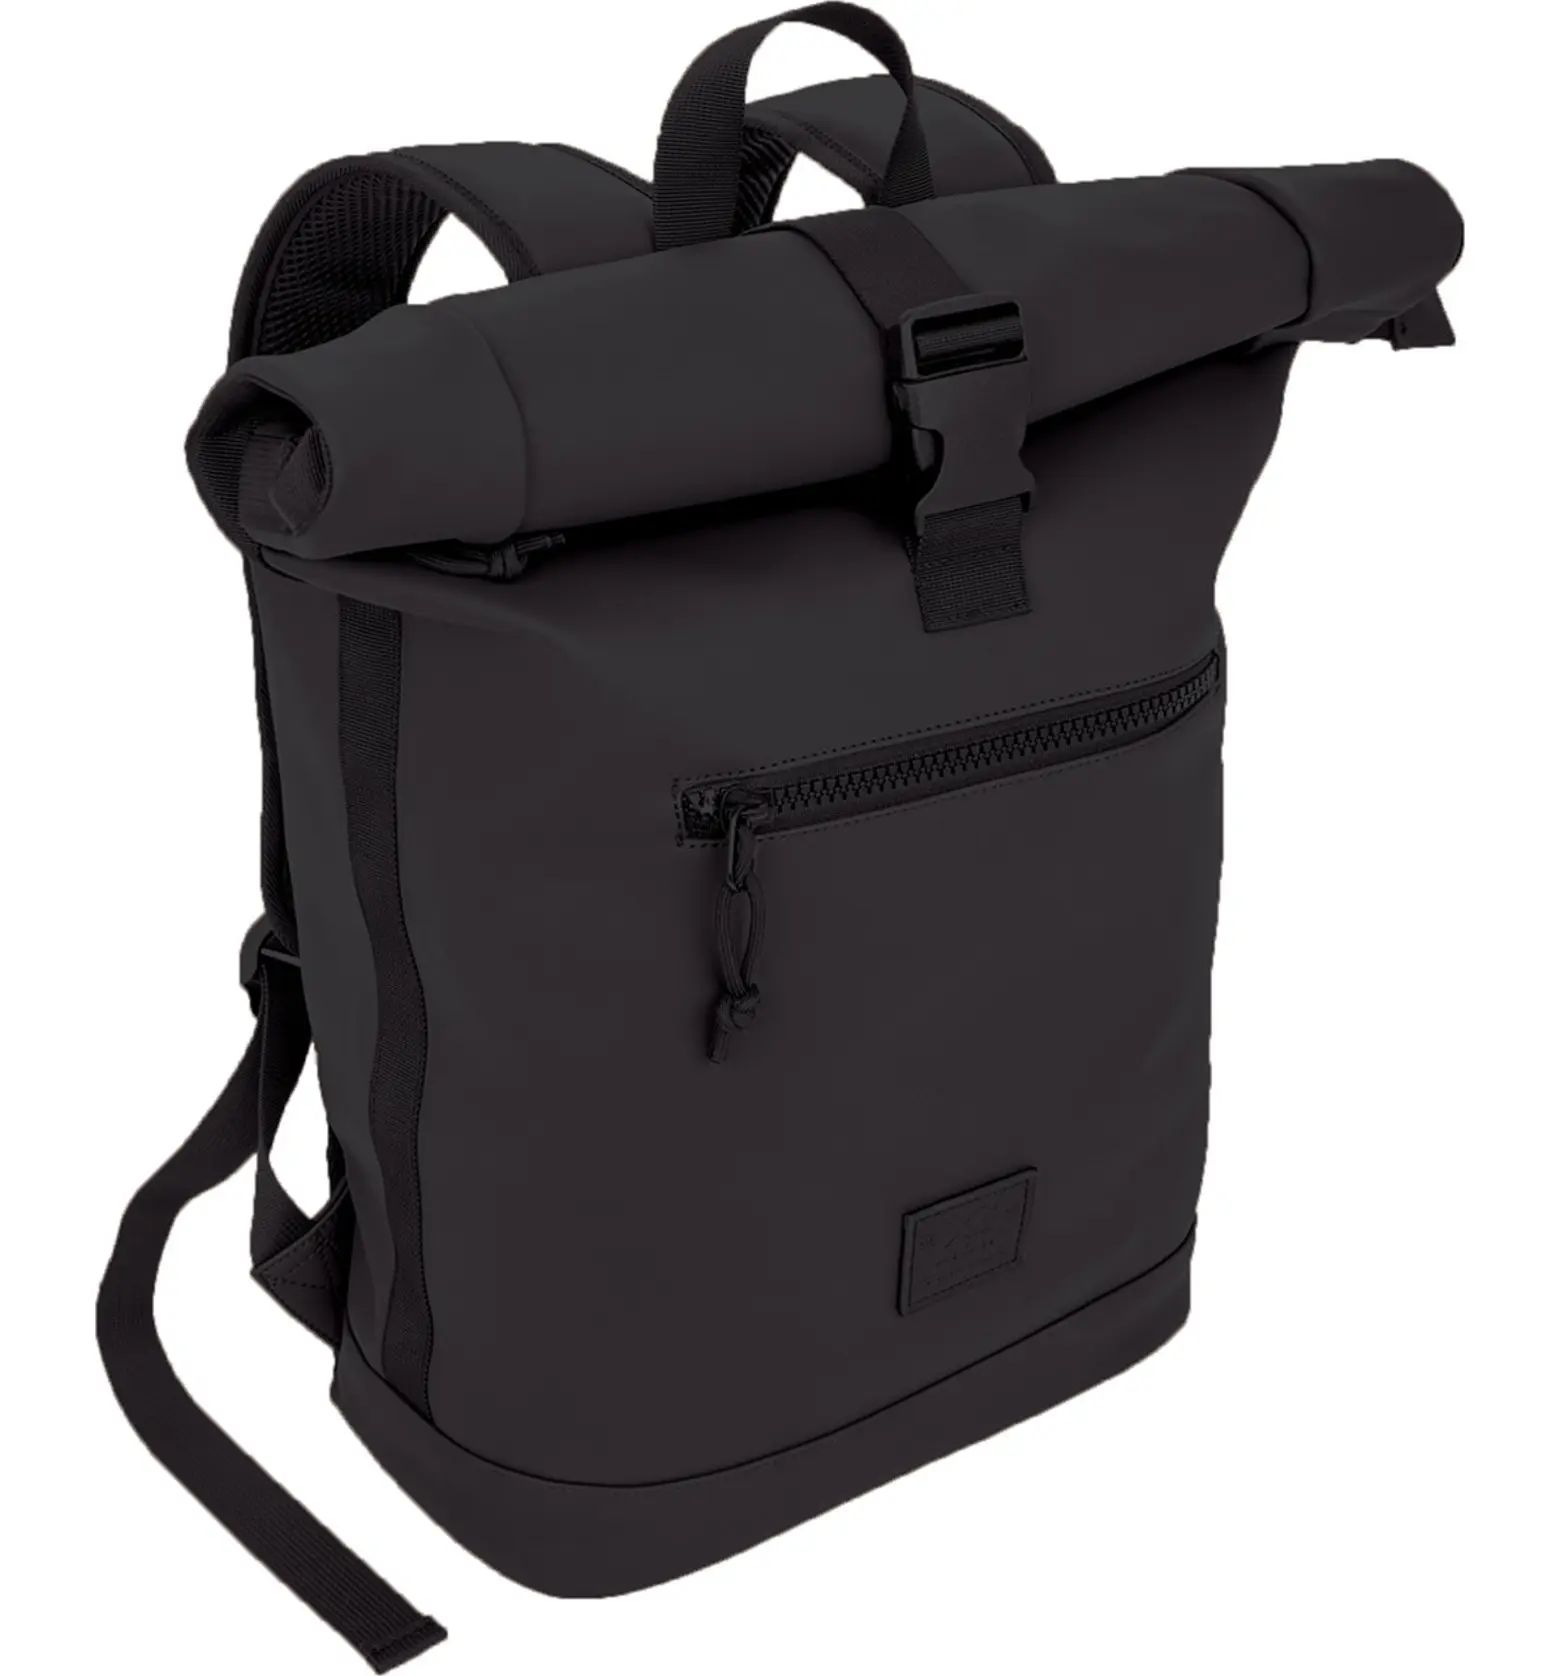 Waterproof Expandable Backpack | Nordstrom Rack